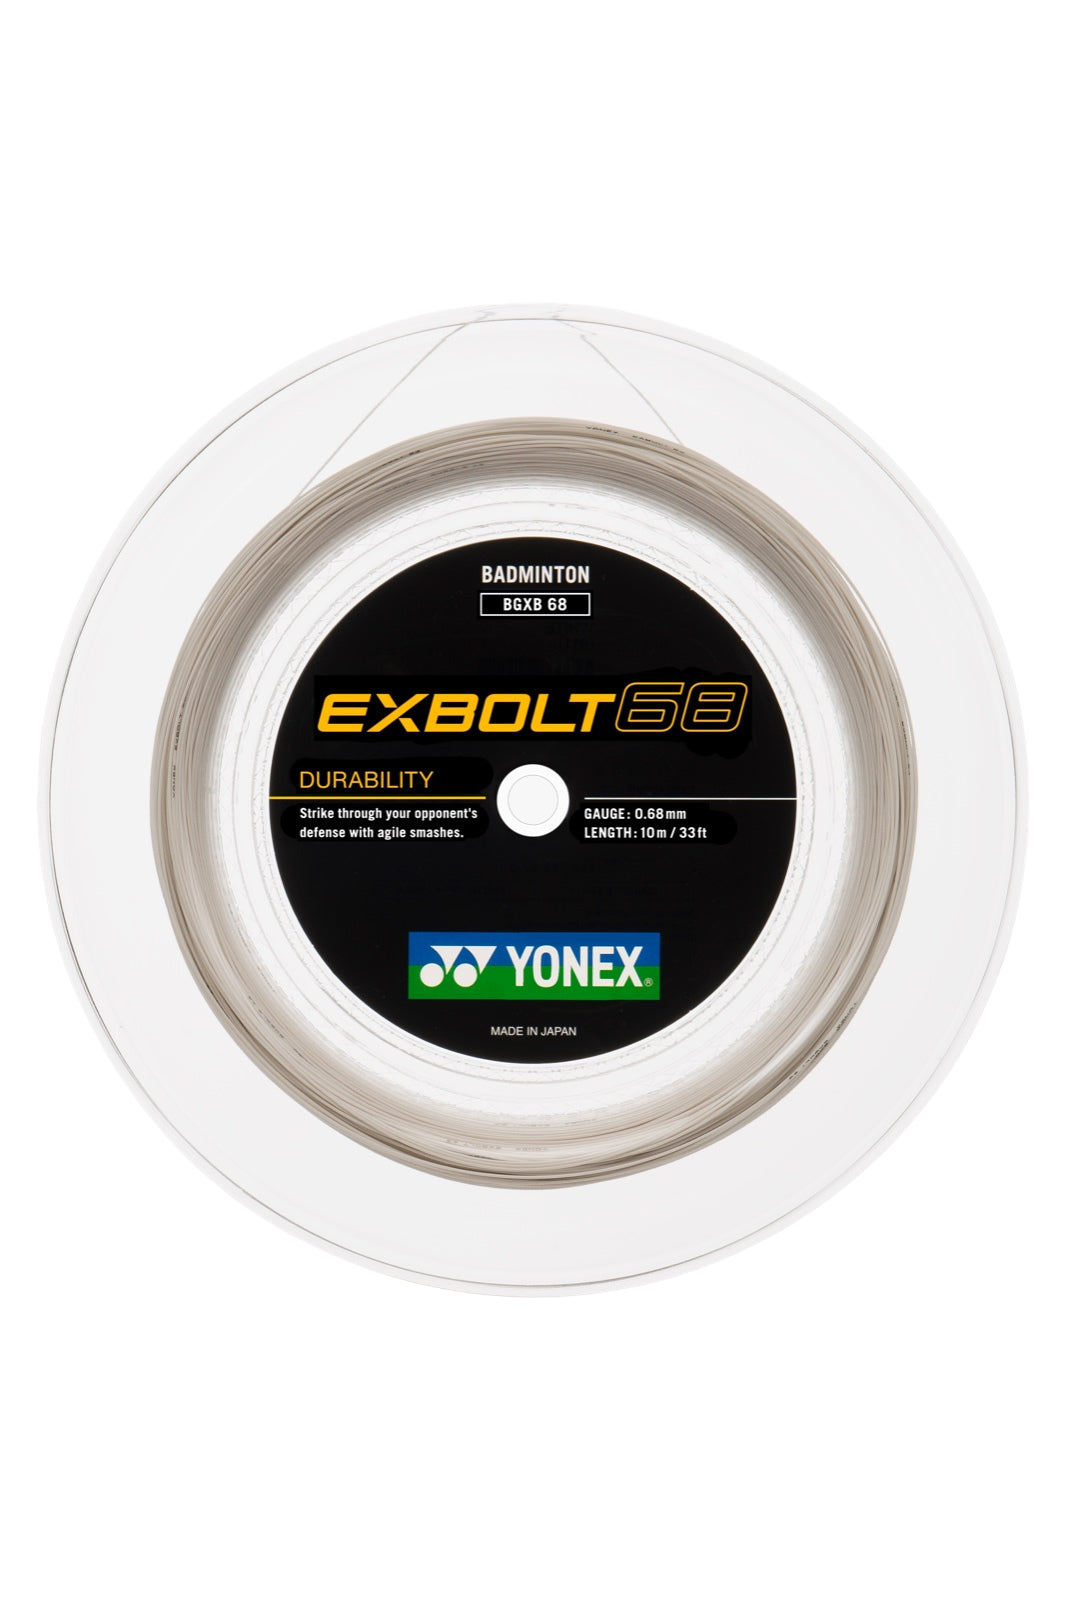 Yonex Exbolt 68 Badminton String White - 0.68mm 200m Reel — Badminton HQ